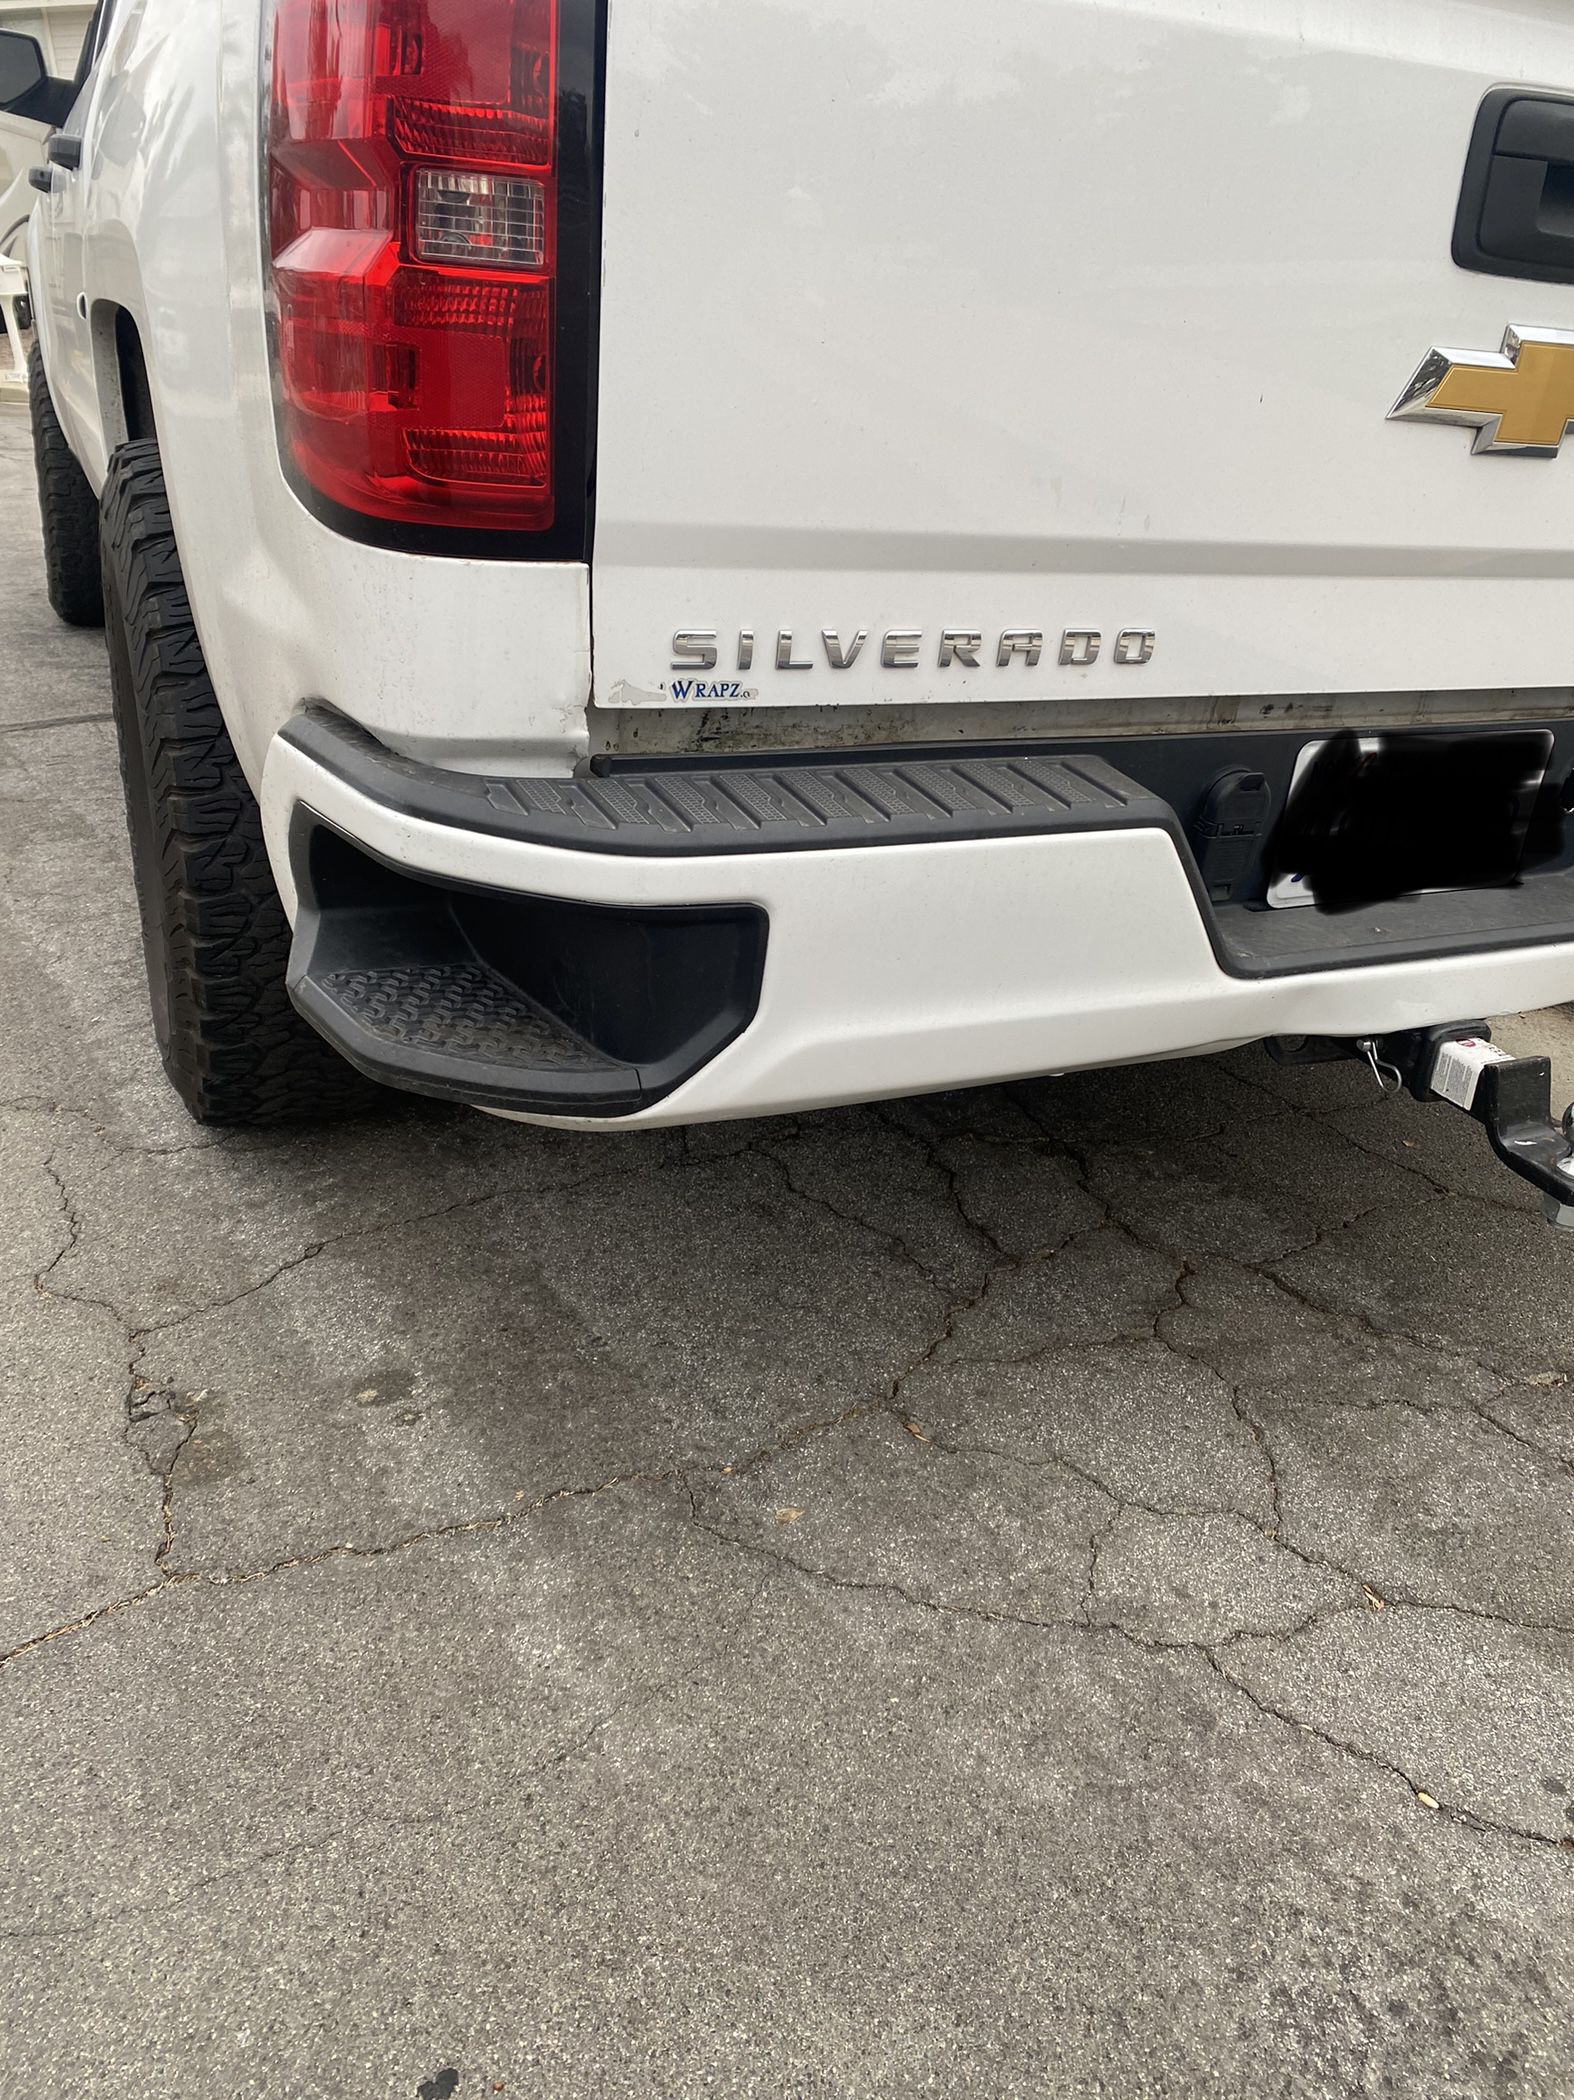 2019 Silverado Rear Bumper